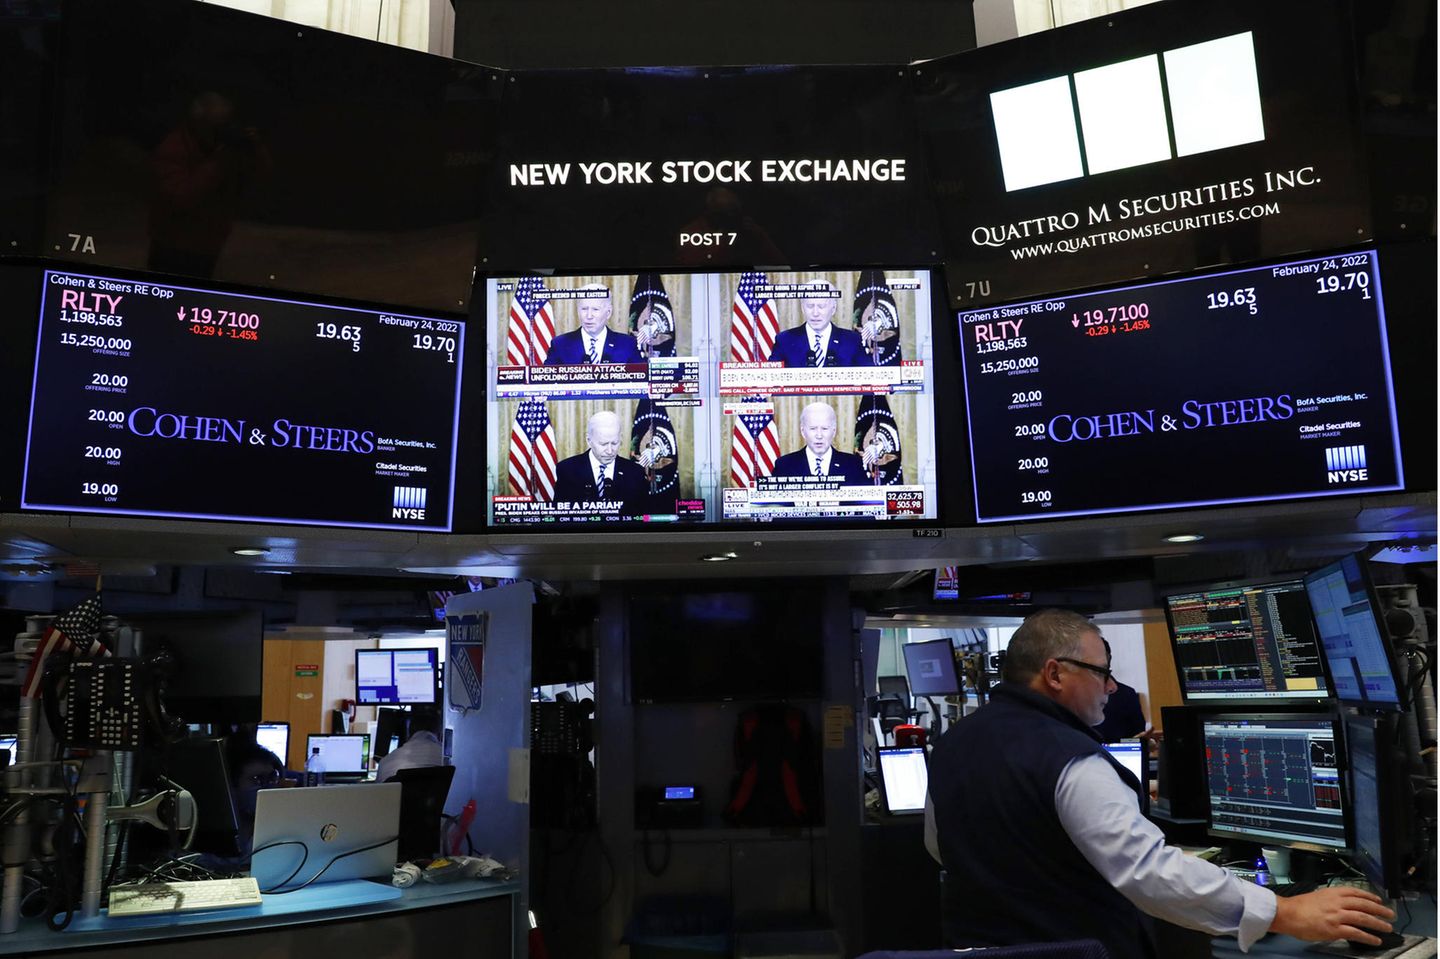 Börsenhändler in New York am Donnerstag – im Hintergrund läuft eine Ansprache von Präsident Biden